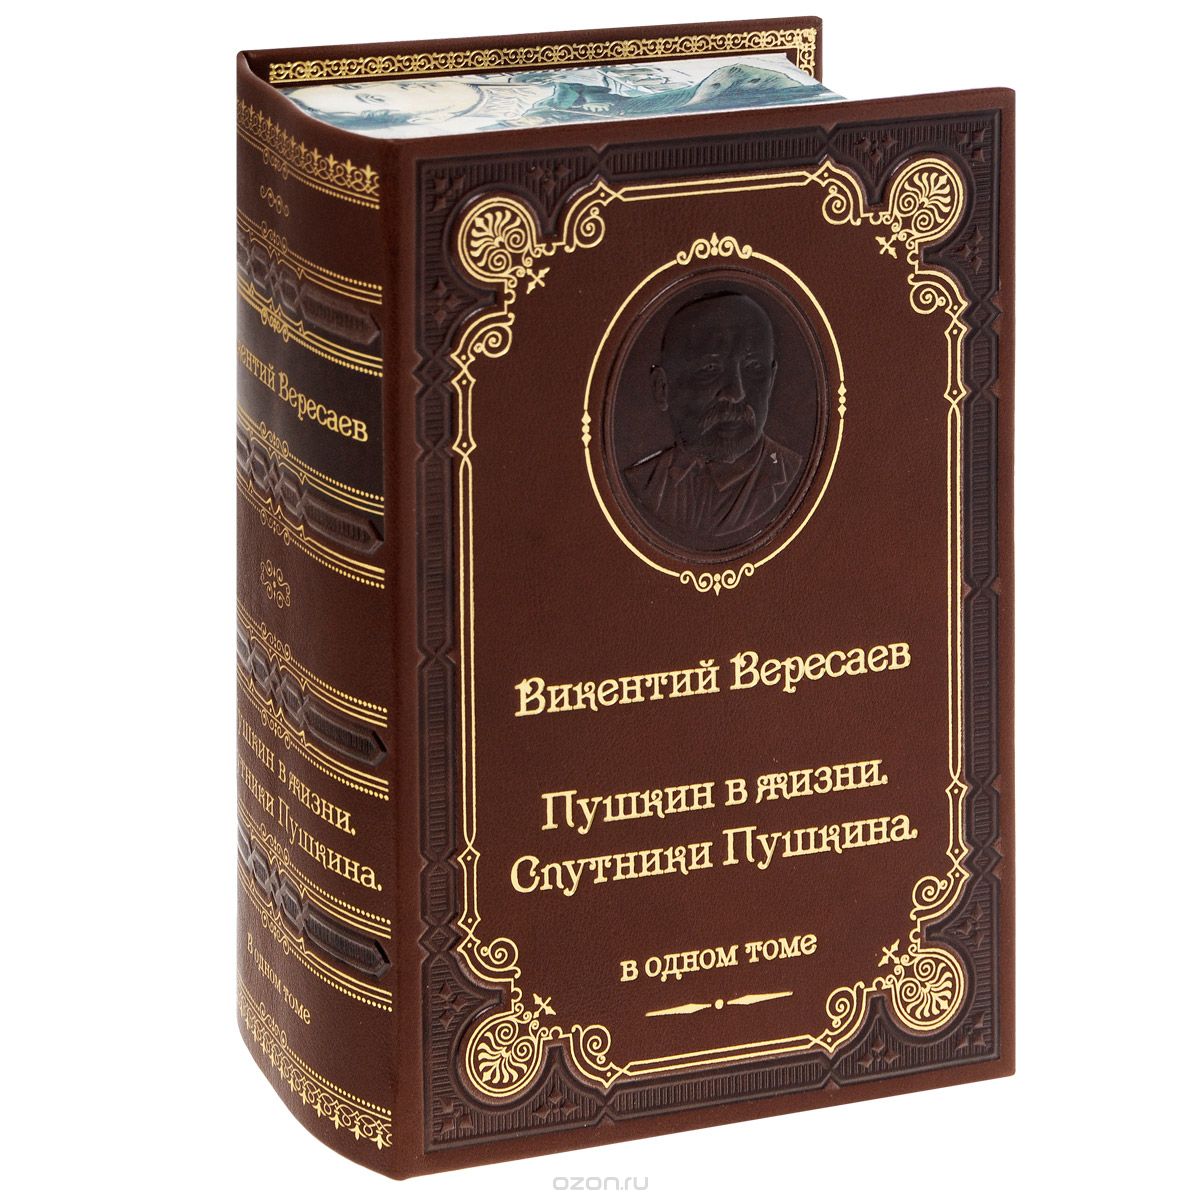 Сочинение по теме Сочинения по творчеству Пушкина, Гончарова